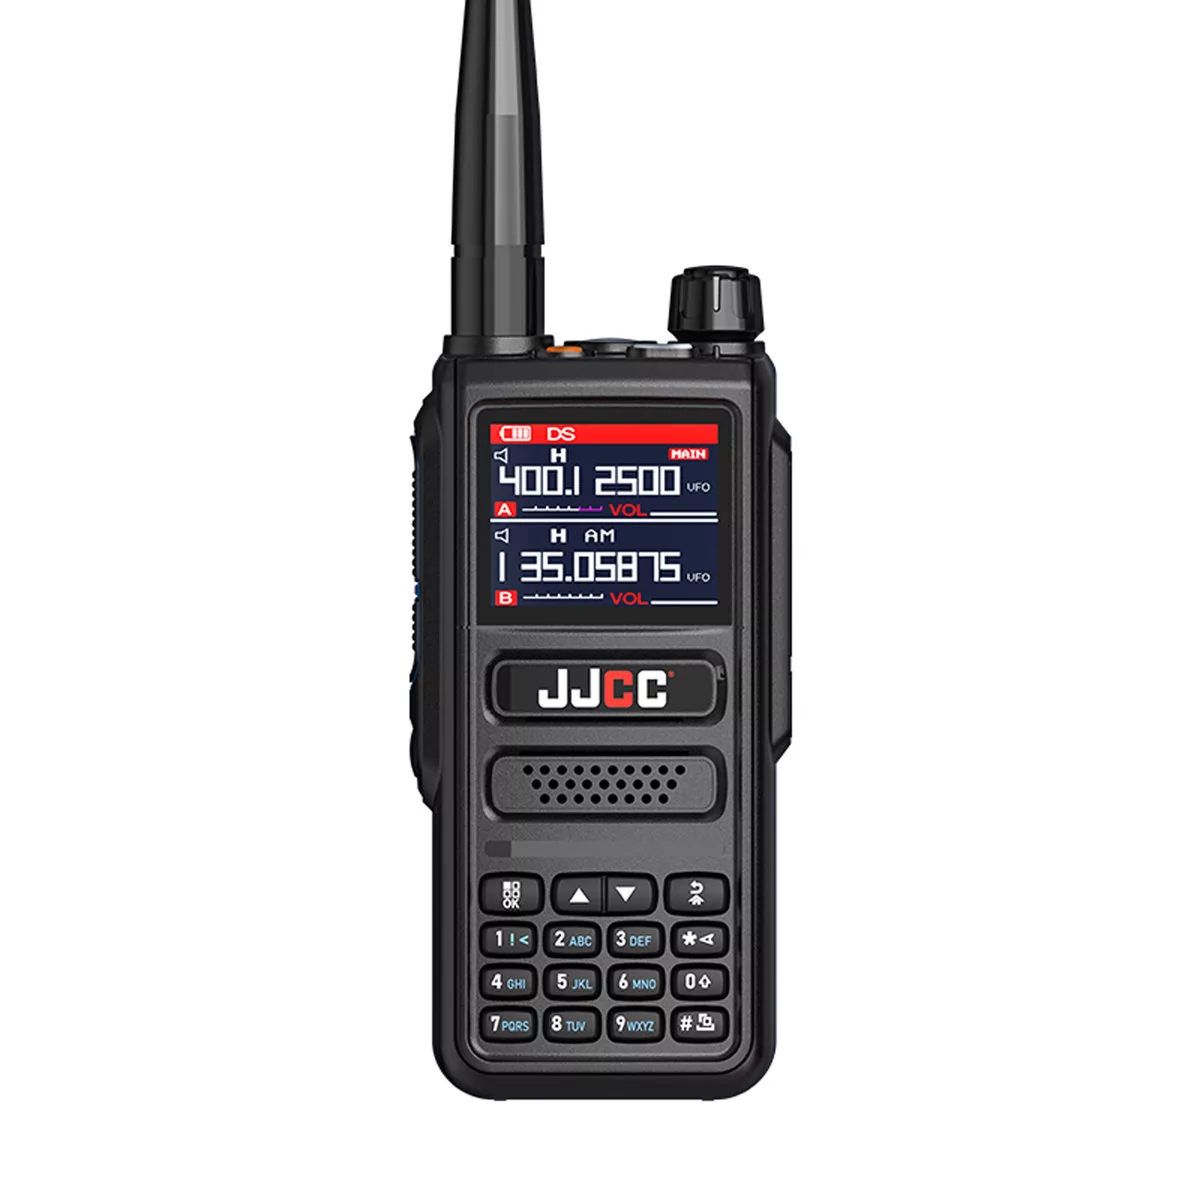 JJCC AC-8810 FM + AirBand, radiotelefon 144/220/350/430 MHz z odbiornikiem pasma lotniczego i radia FM